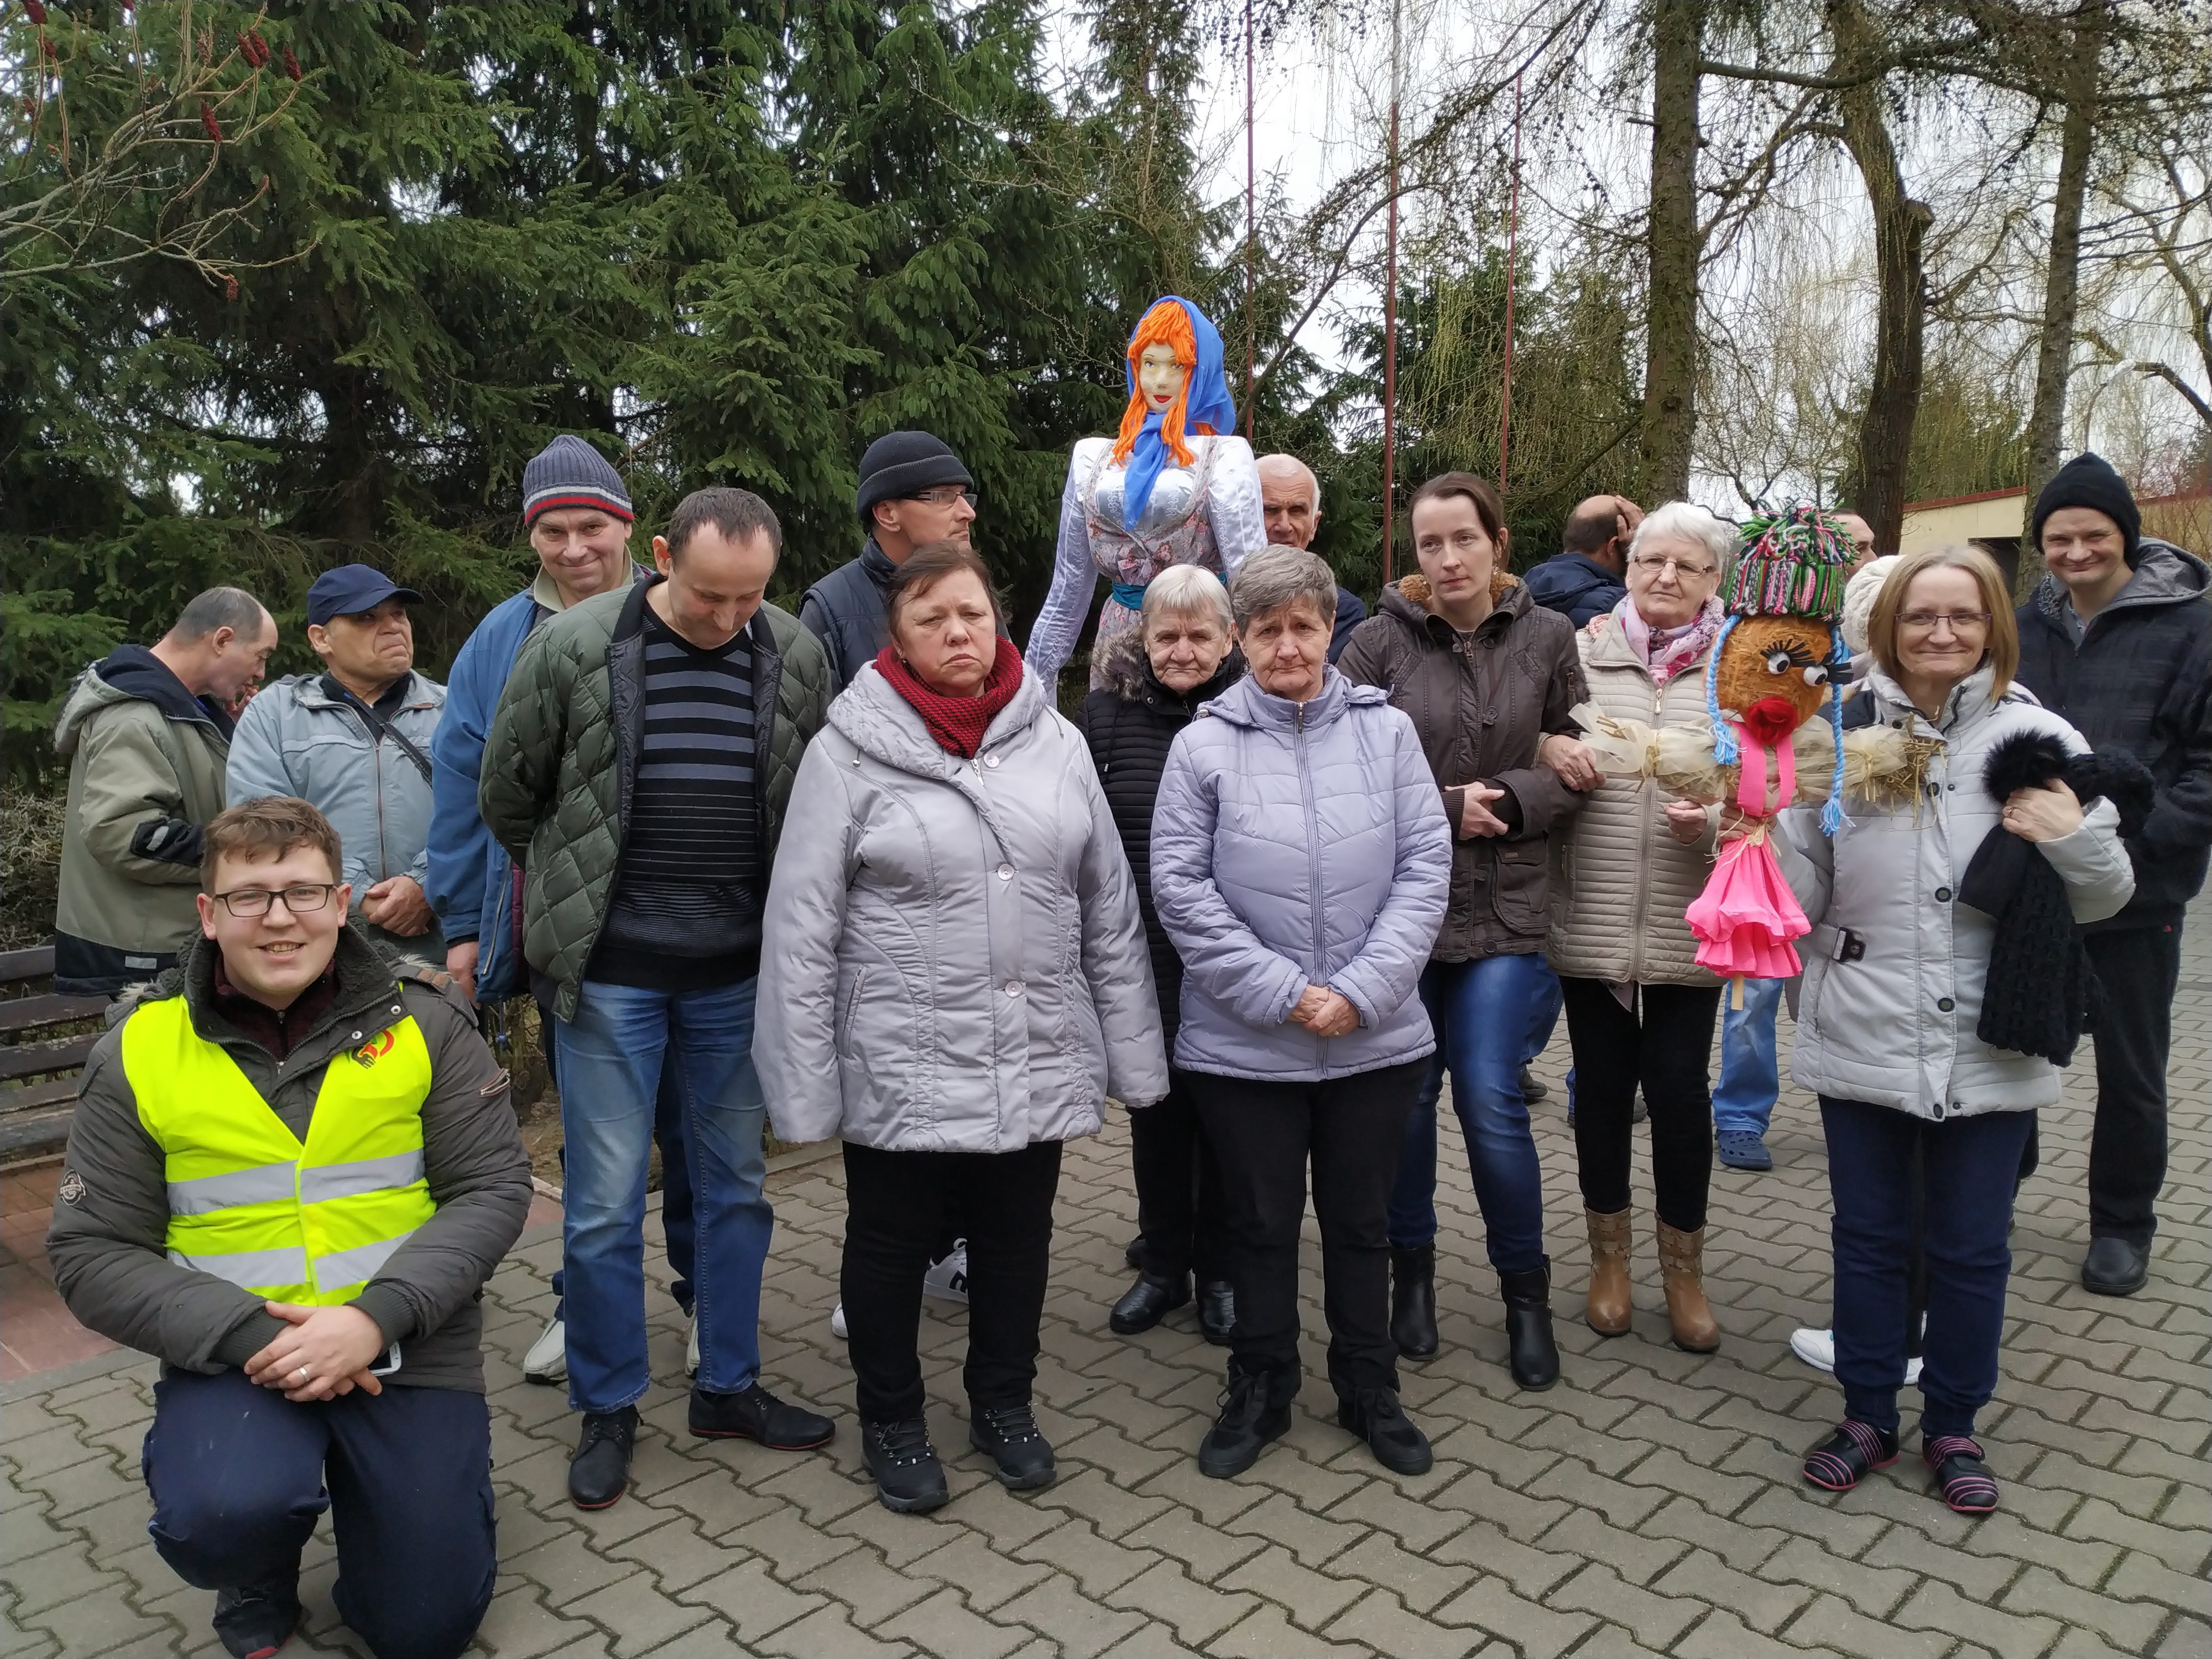 Stojący w grupie mieszkańcy Domów Pomocy Społecznej w Chojnie i Nowej Wsi pozują do zdjęcia z kukłami Marzanny.